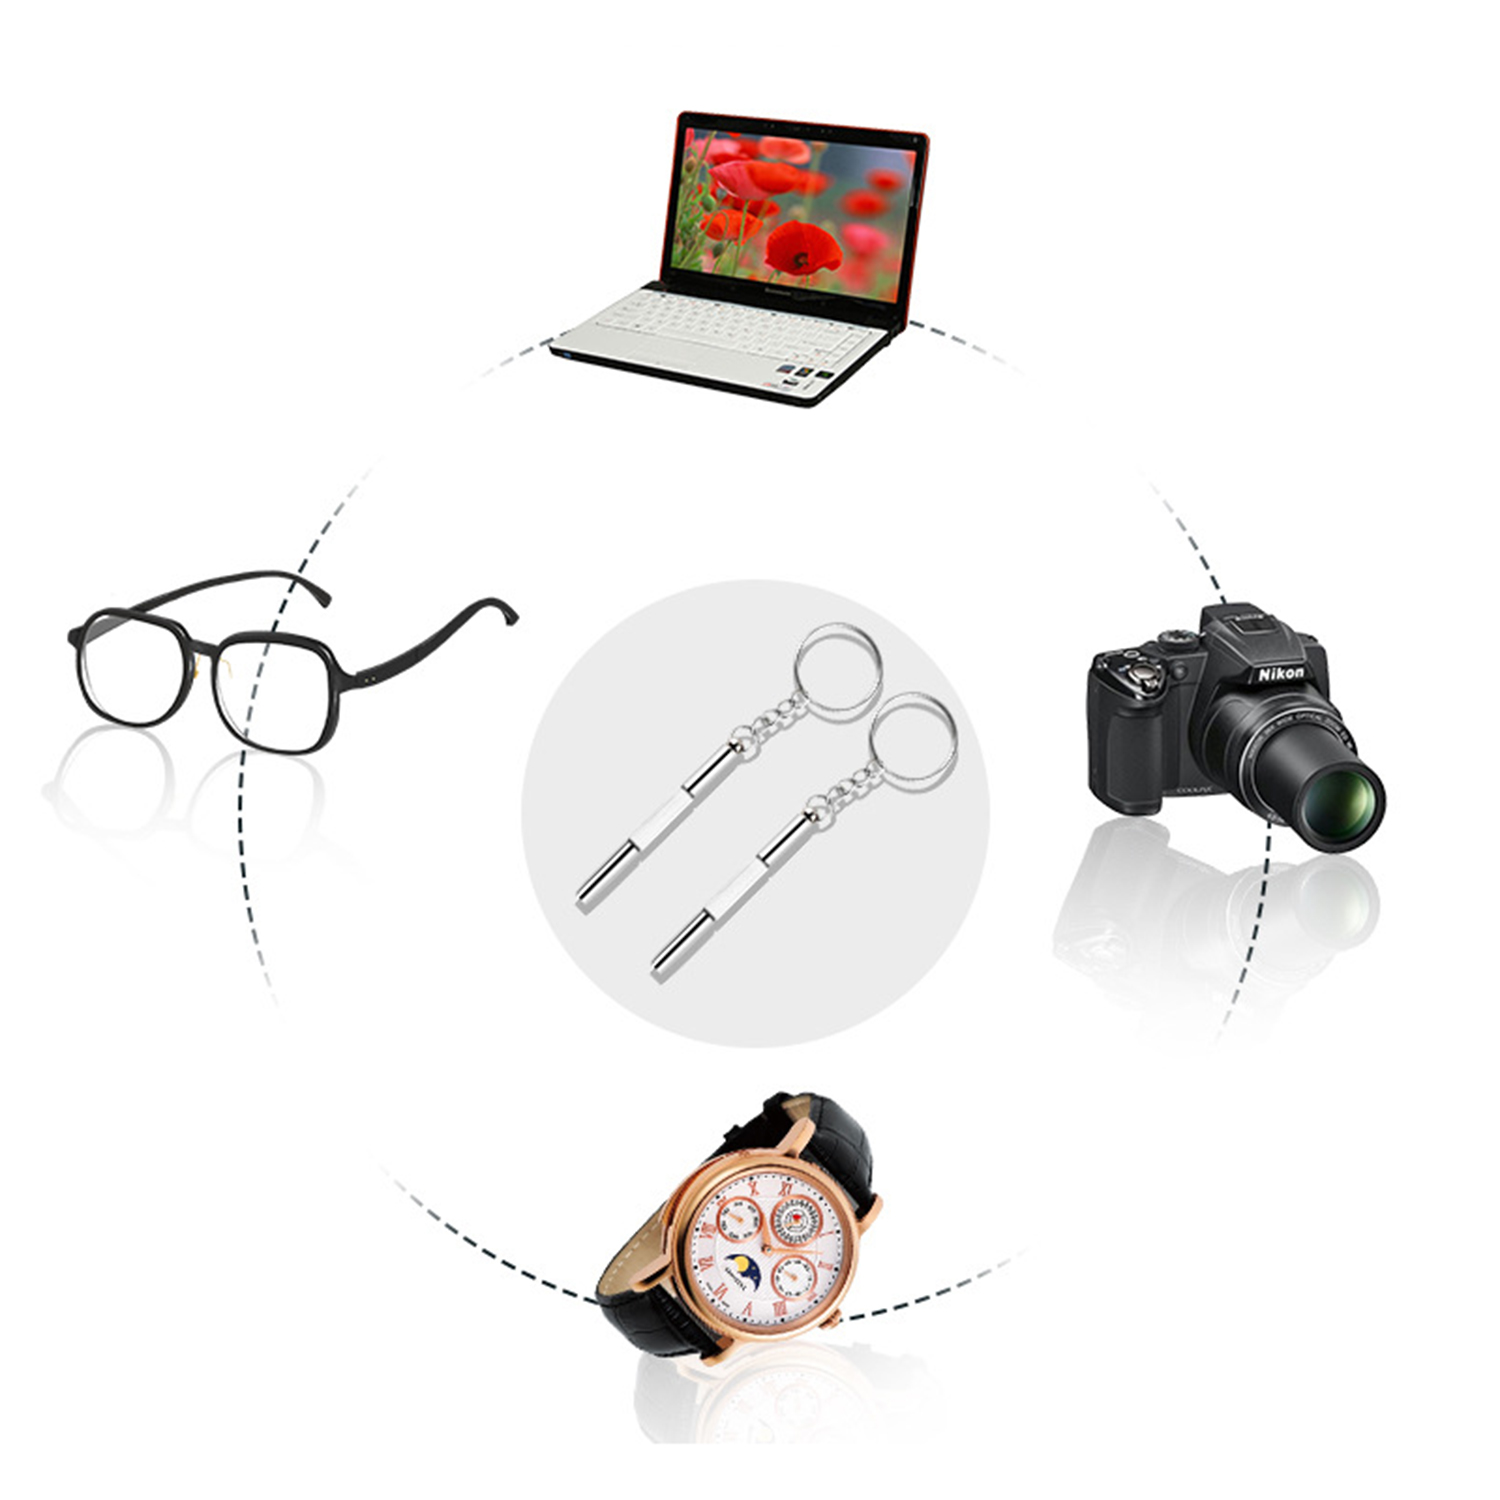 Tua vít 3 trong 1 tiện dụng sửa chữa kính mắt, đồng hồ, điện thoại di động Kèm một móc khóa rất tiện lợi và dễ sử dụng